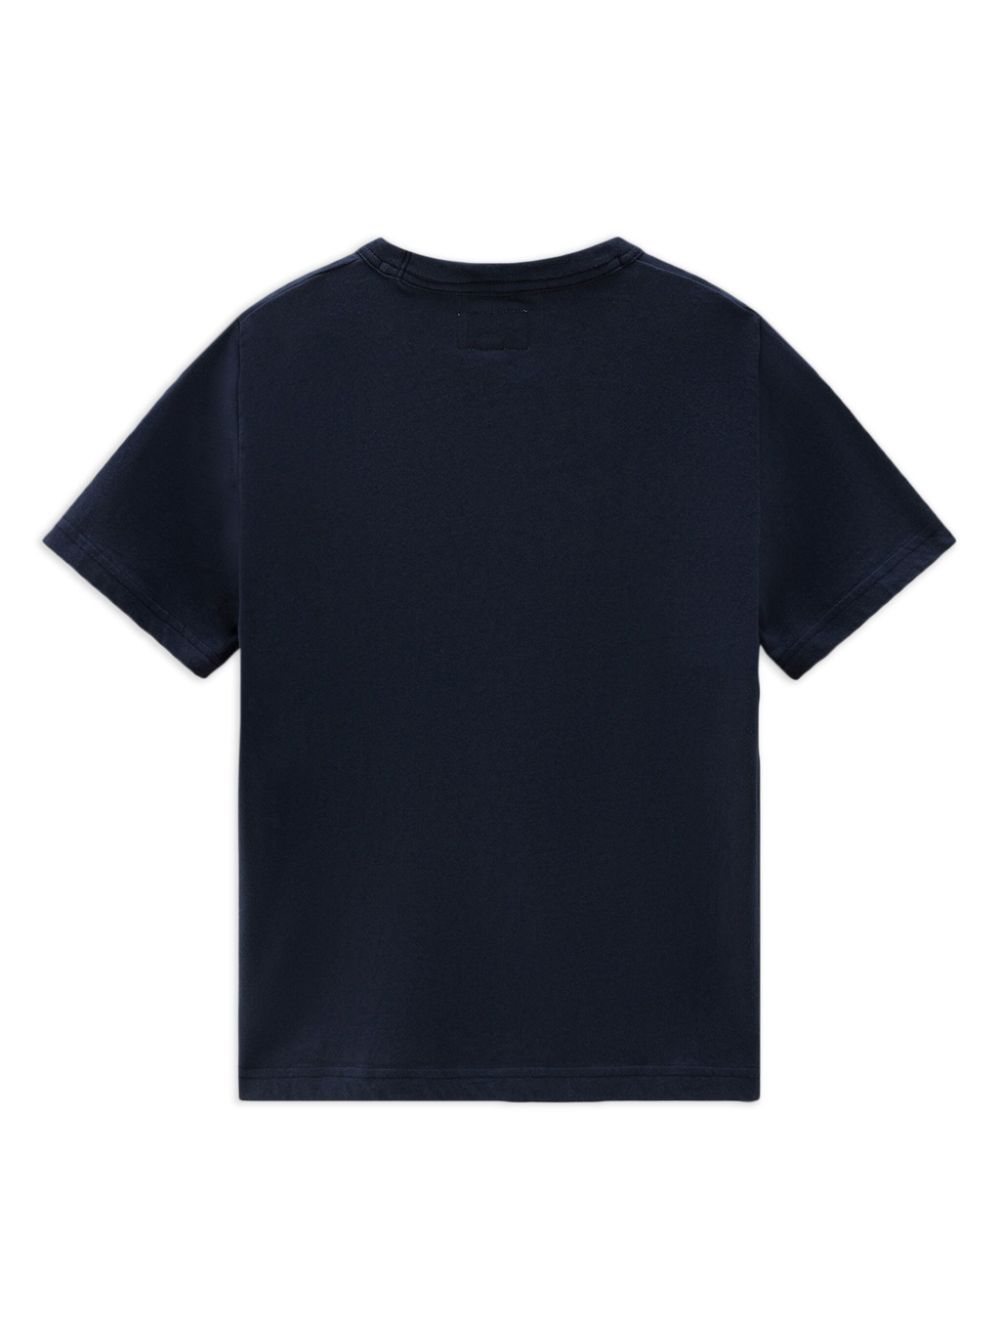 Woolrich Kids t-shirt con stampa